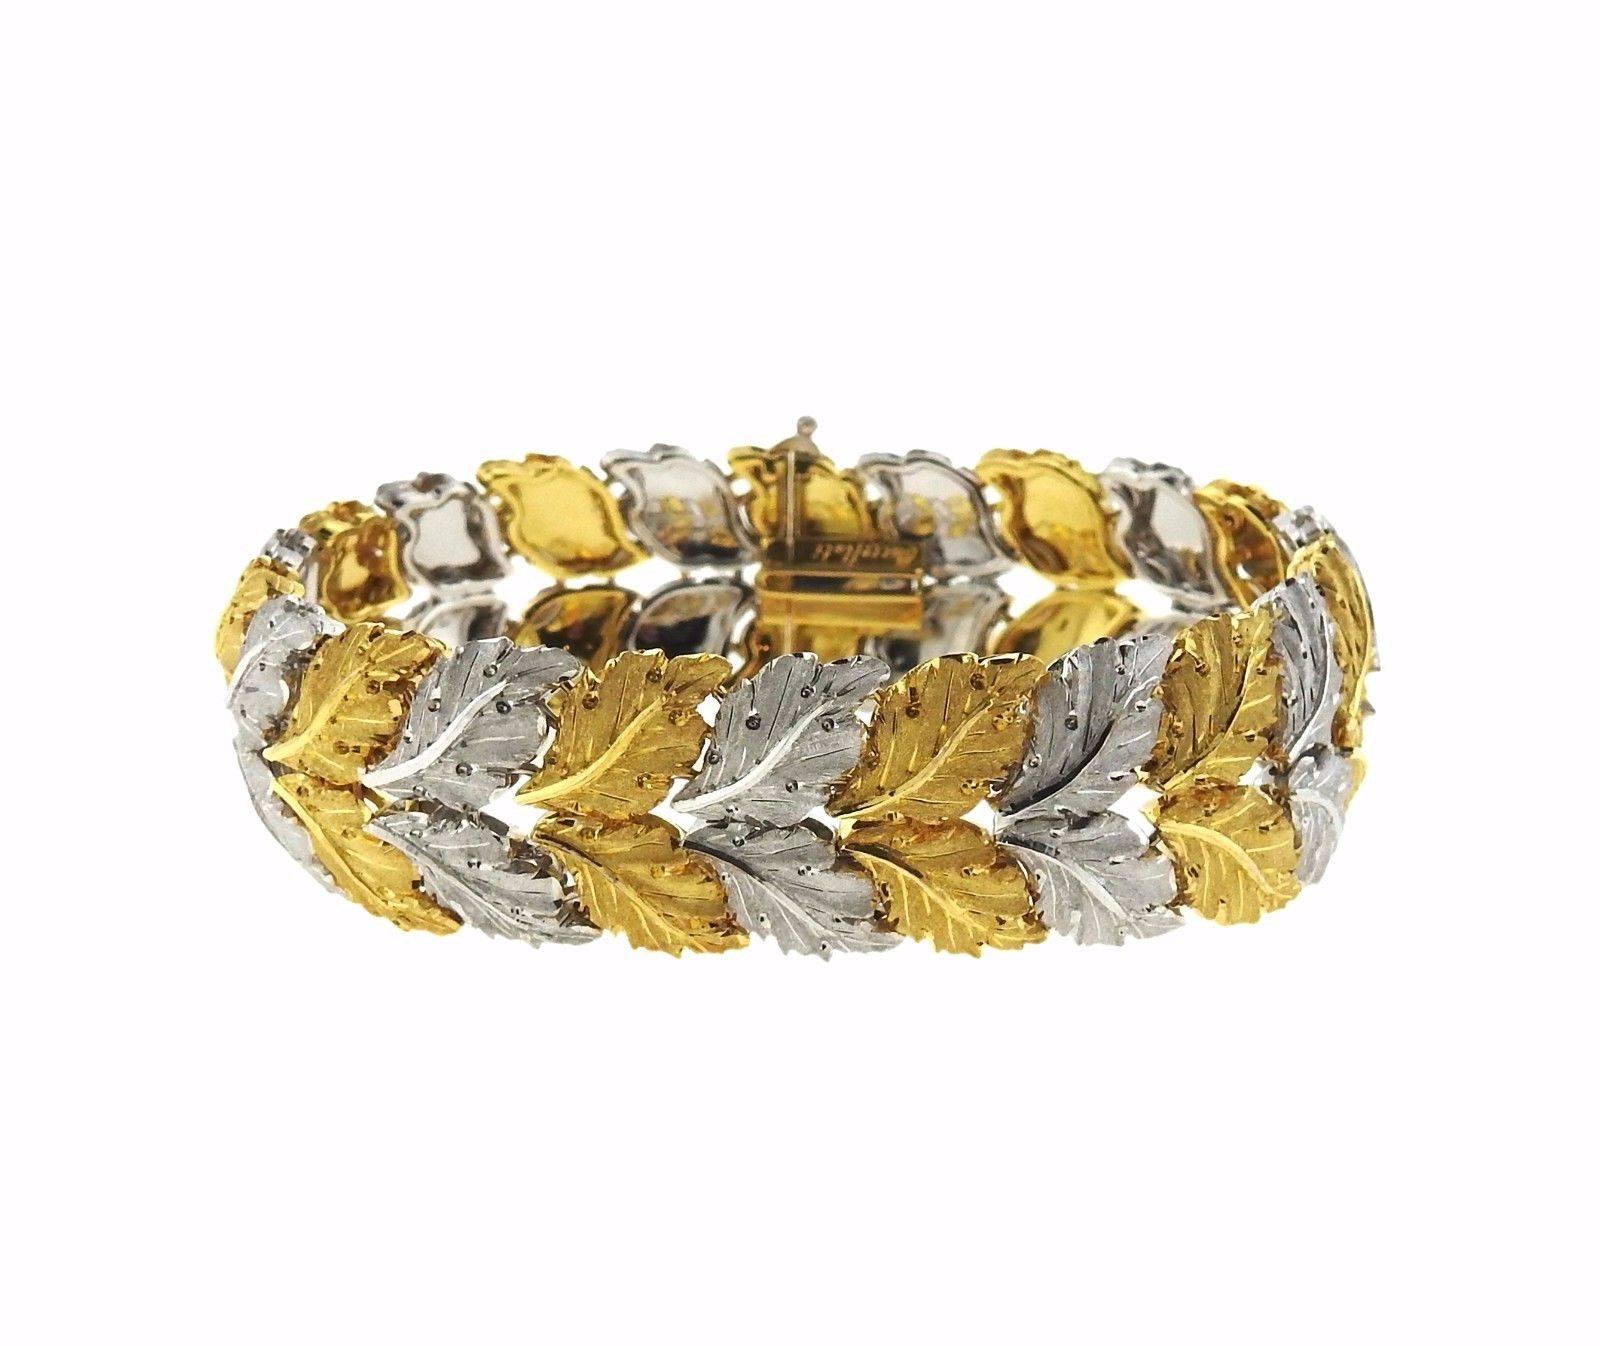 An 18k gold bracelet depicting leaves.  The bracelet measures 7